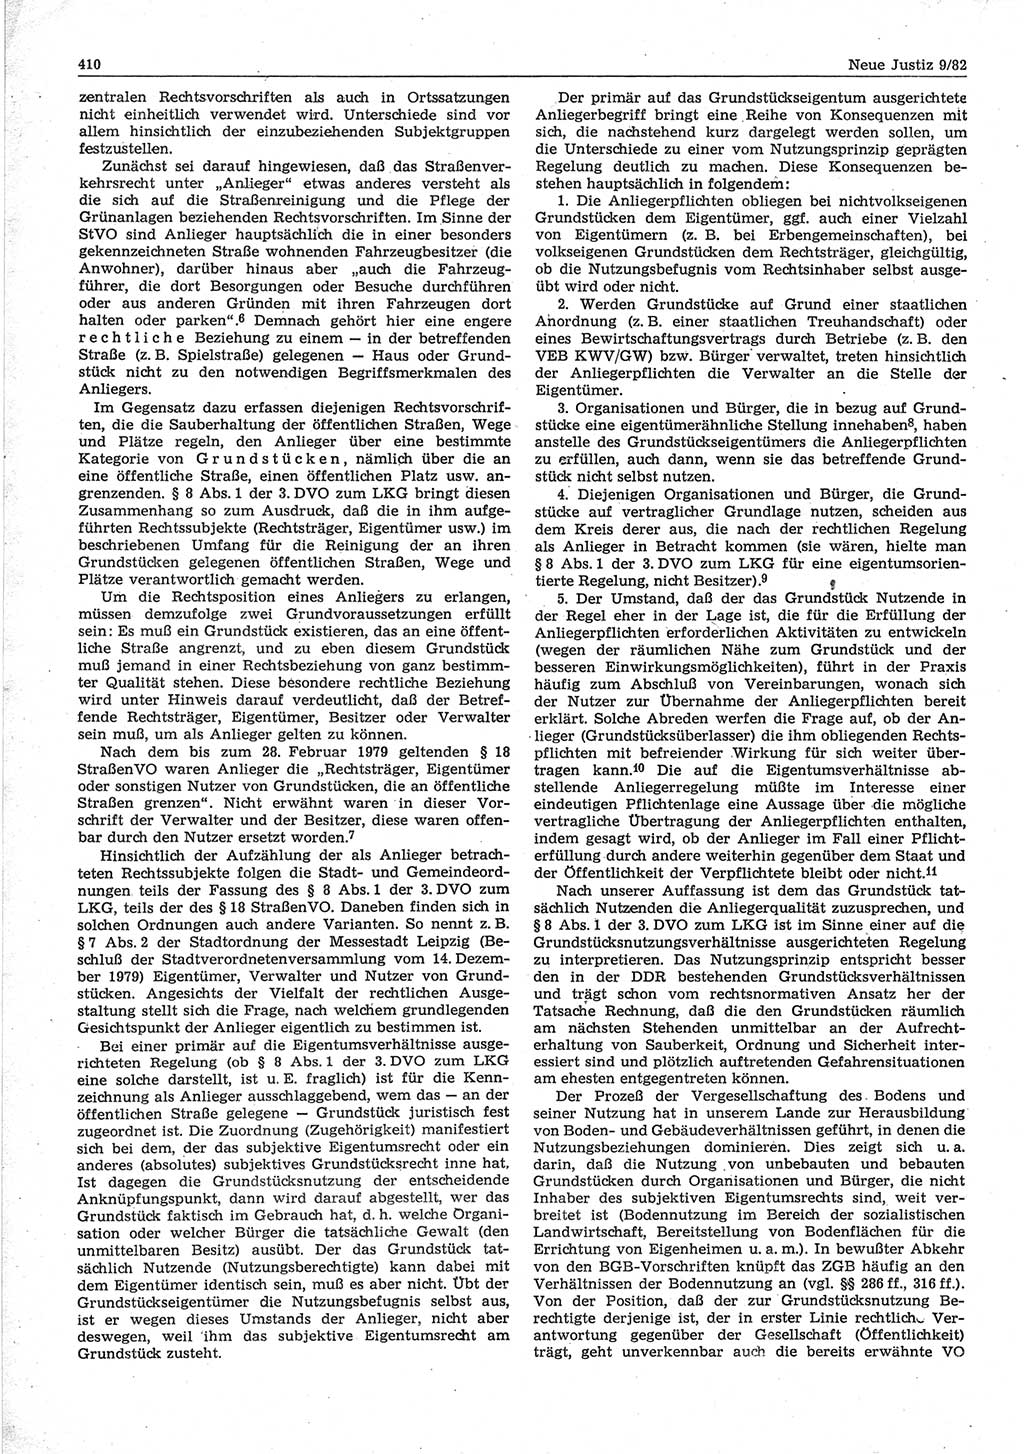 Neue Justiz (NJ), Zeitschrift für sozialistisches Recht und Gesetzlichkeit [Deutsche Demokratische Republik (DDR)], 36. Jahrgang 1982, Seite 410 (NJ DDR 1982, S. 410)